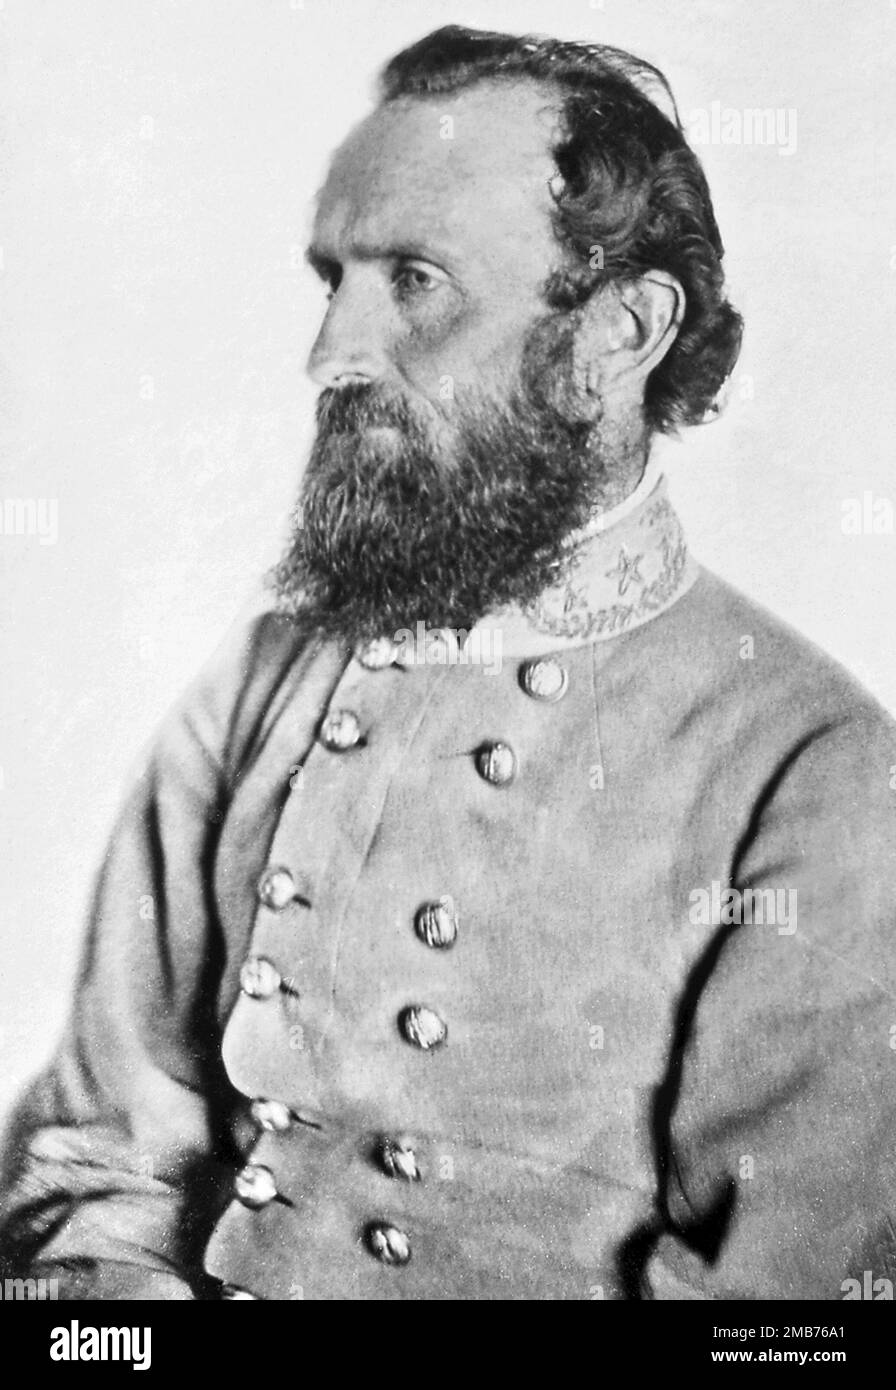 Il ritratto del generale Stonewall Jackson 'Chancellorsville', scattato in una fattoria della contea di Spotylvania il 26 aprile 1863, sette giorni prima che fosse ferito nella battaglia di Chancellorsville Foto Stock